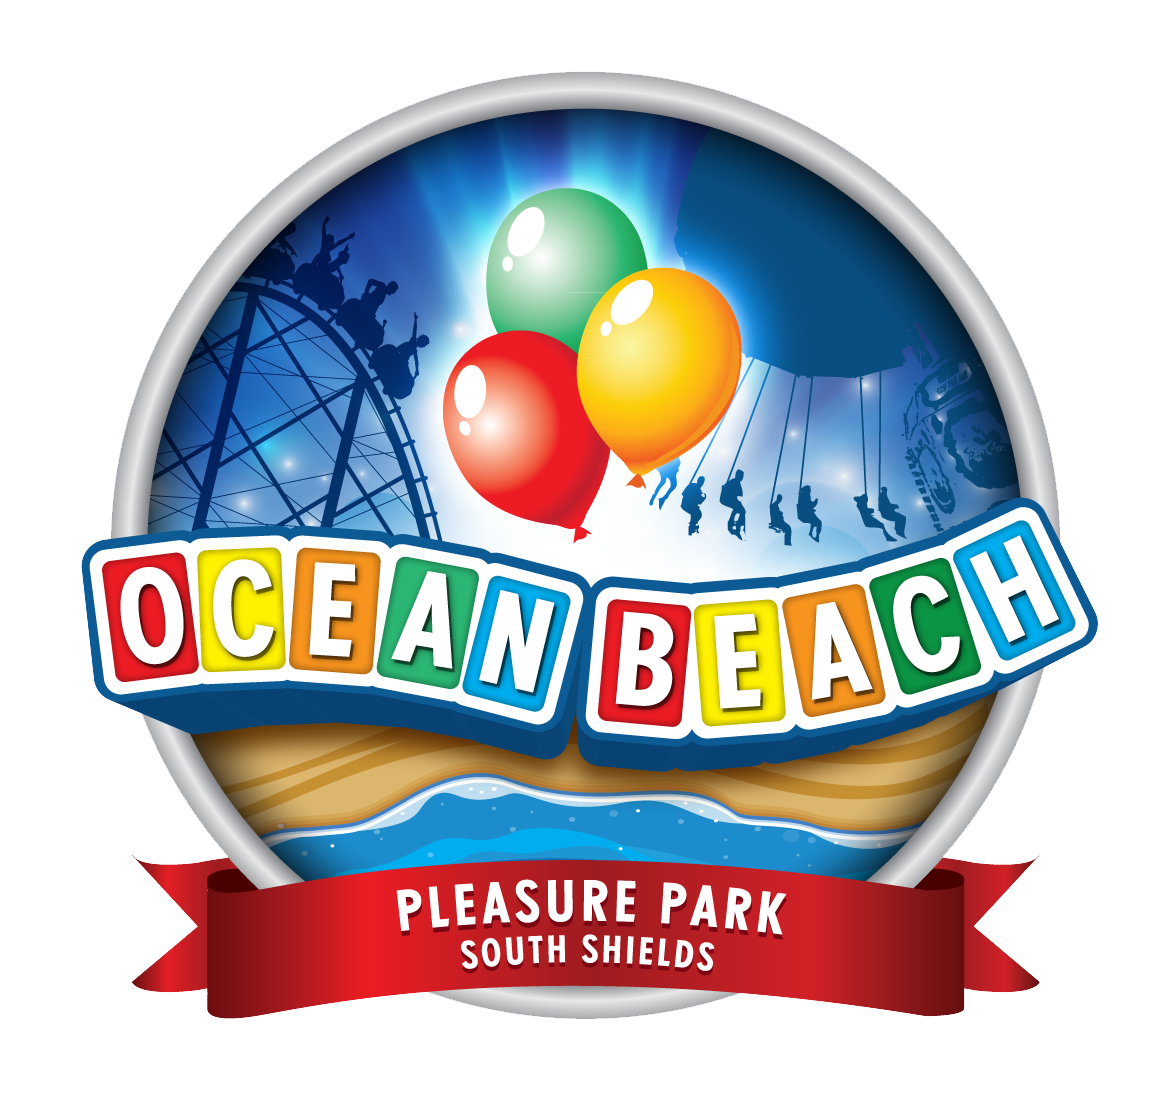 Ocean Beach Pleasure Park South Shields